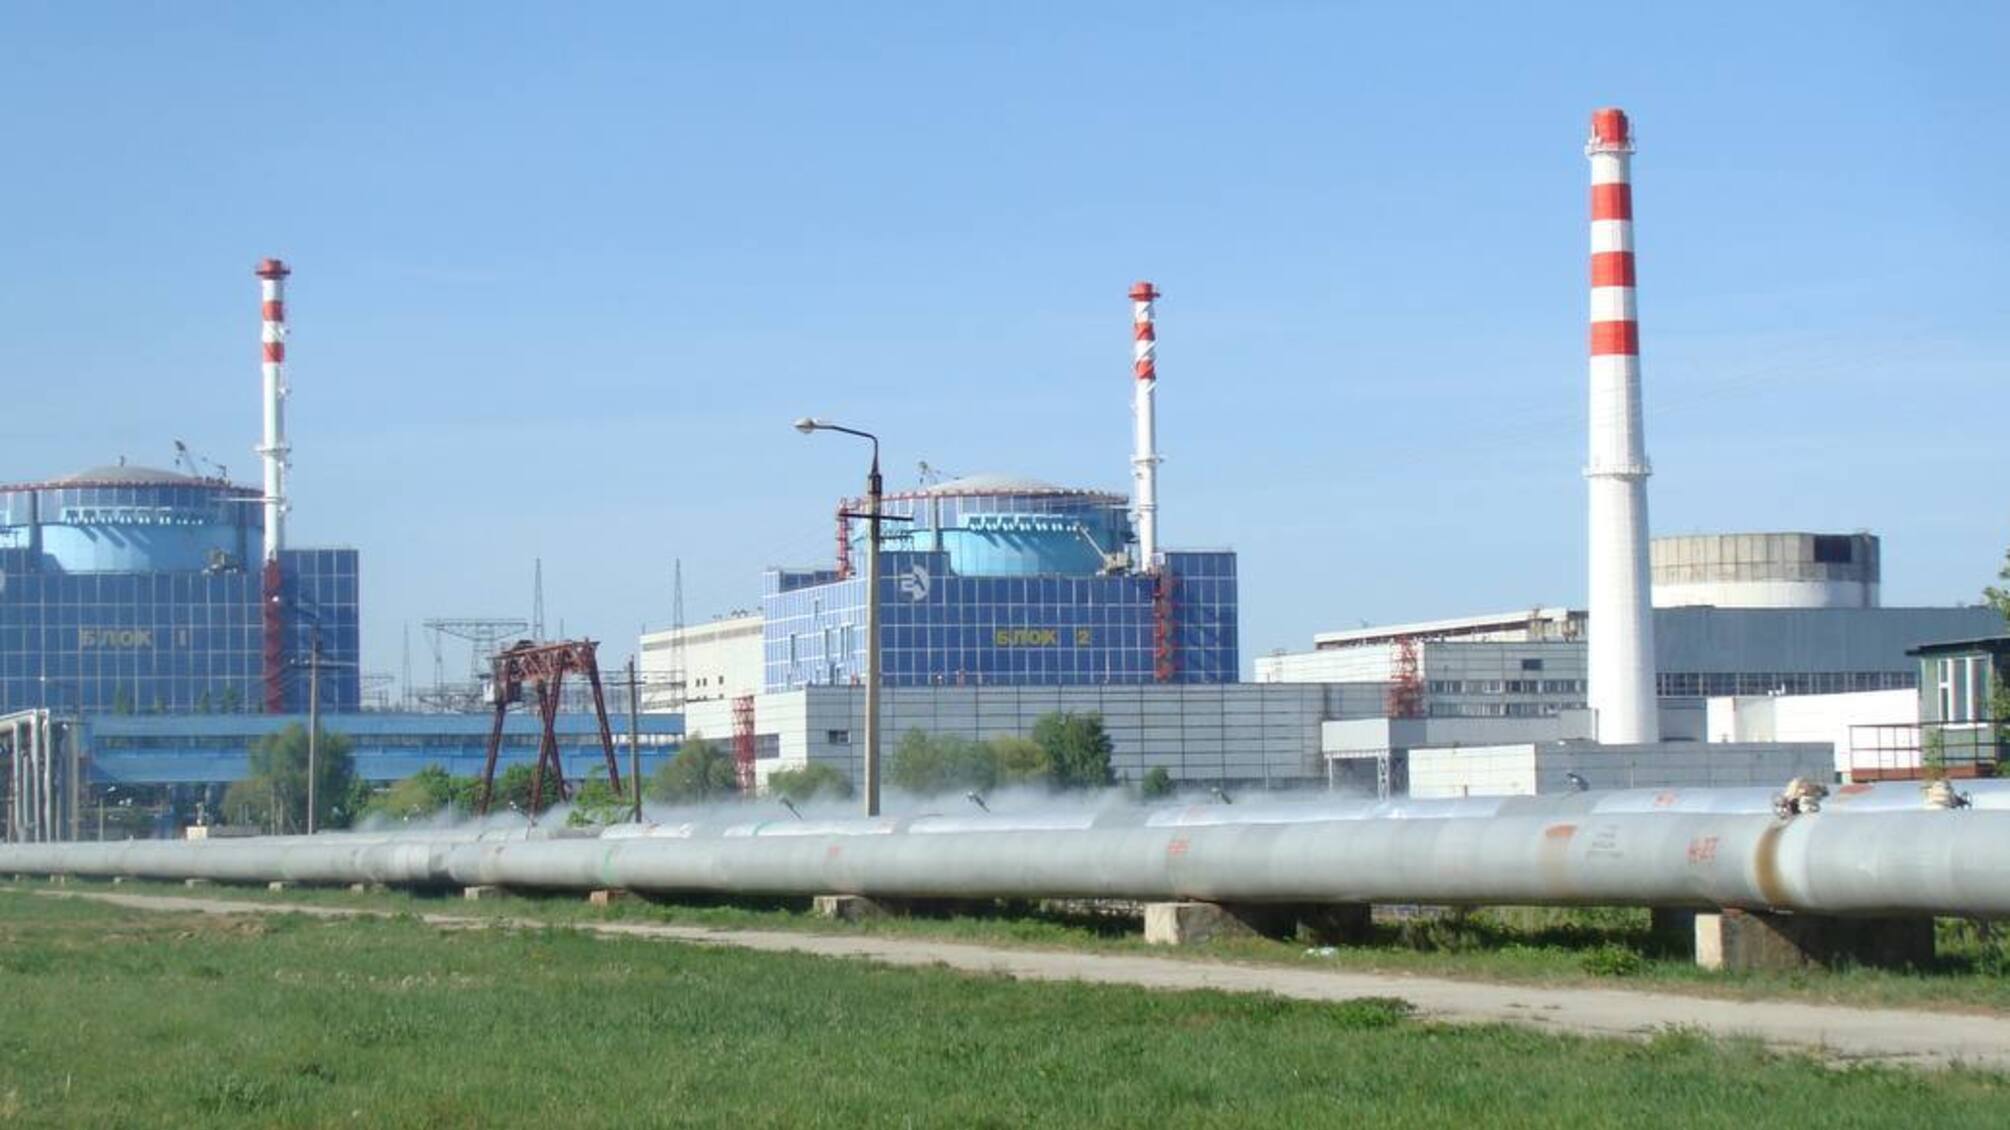 Хмельницкая АЭС станет самой мощной в Европе после строительства новых 4 блоков, — министр энергетики Галущенко